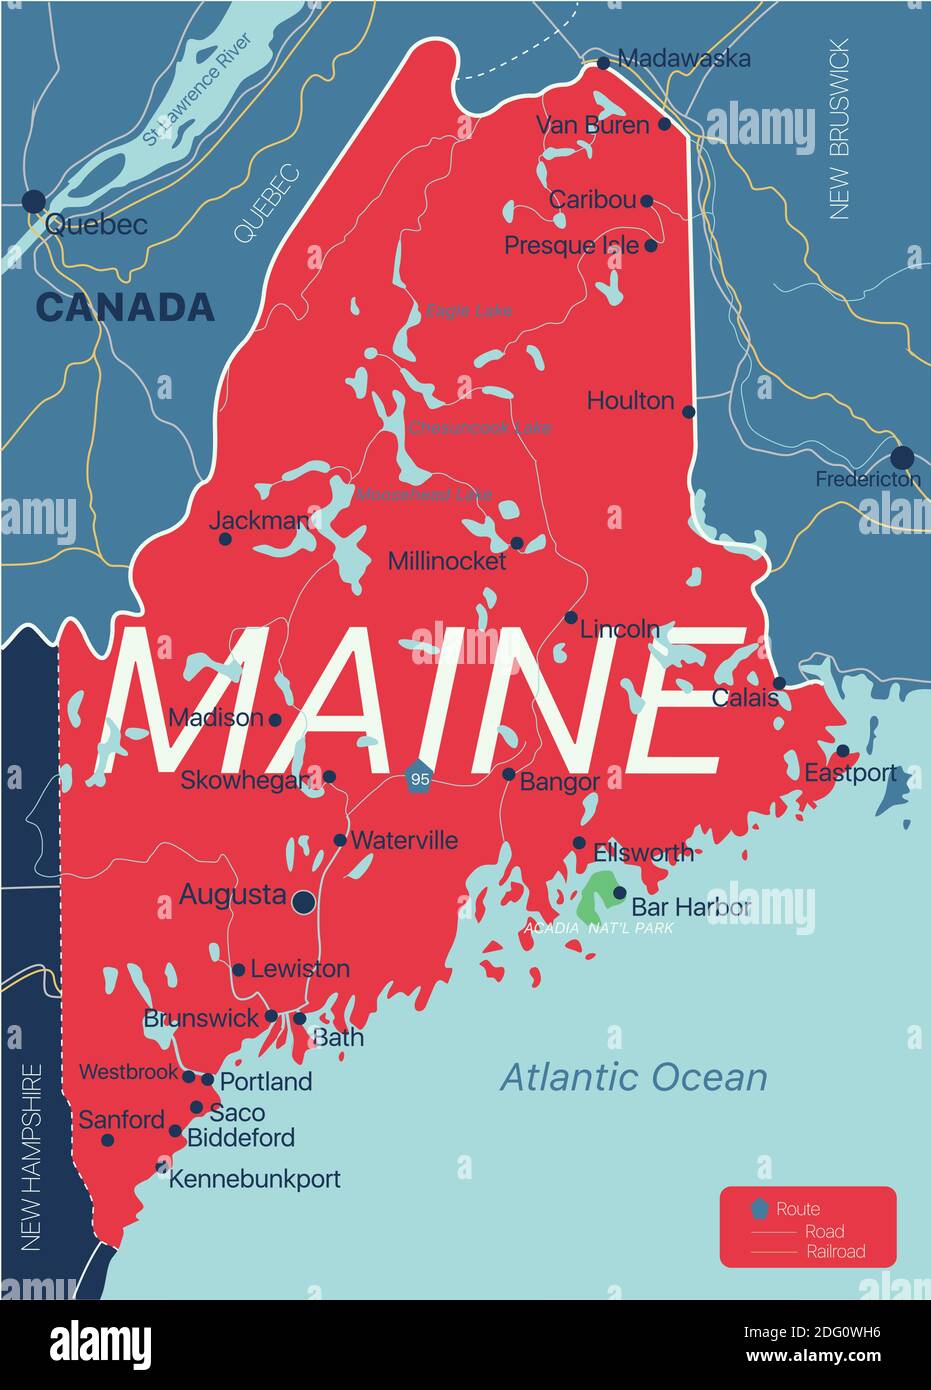 Maine stato dettagliato mappa modificabile con città e città, siti geografici, strade, ferrovie, interstatali e autostrade degli Stati Uniti. File vettoriale EPS-10, trend Illustrazione Vettoriale